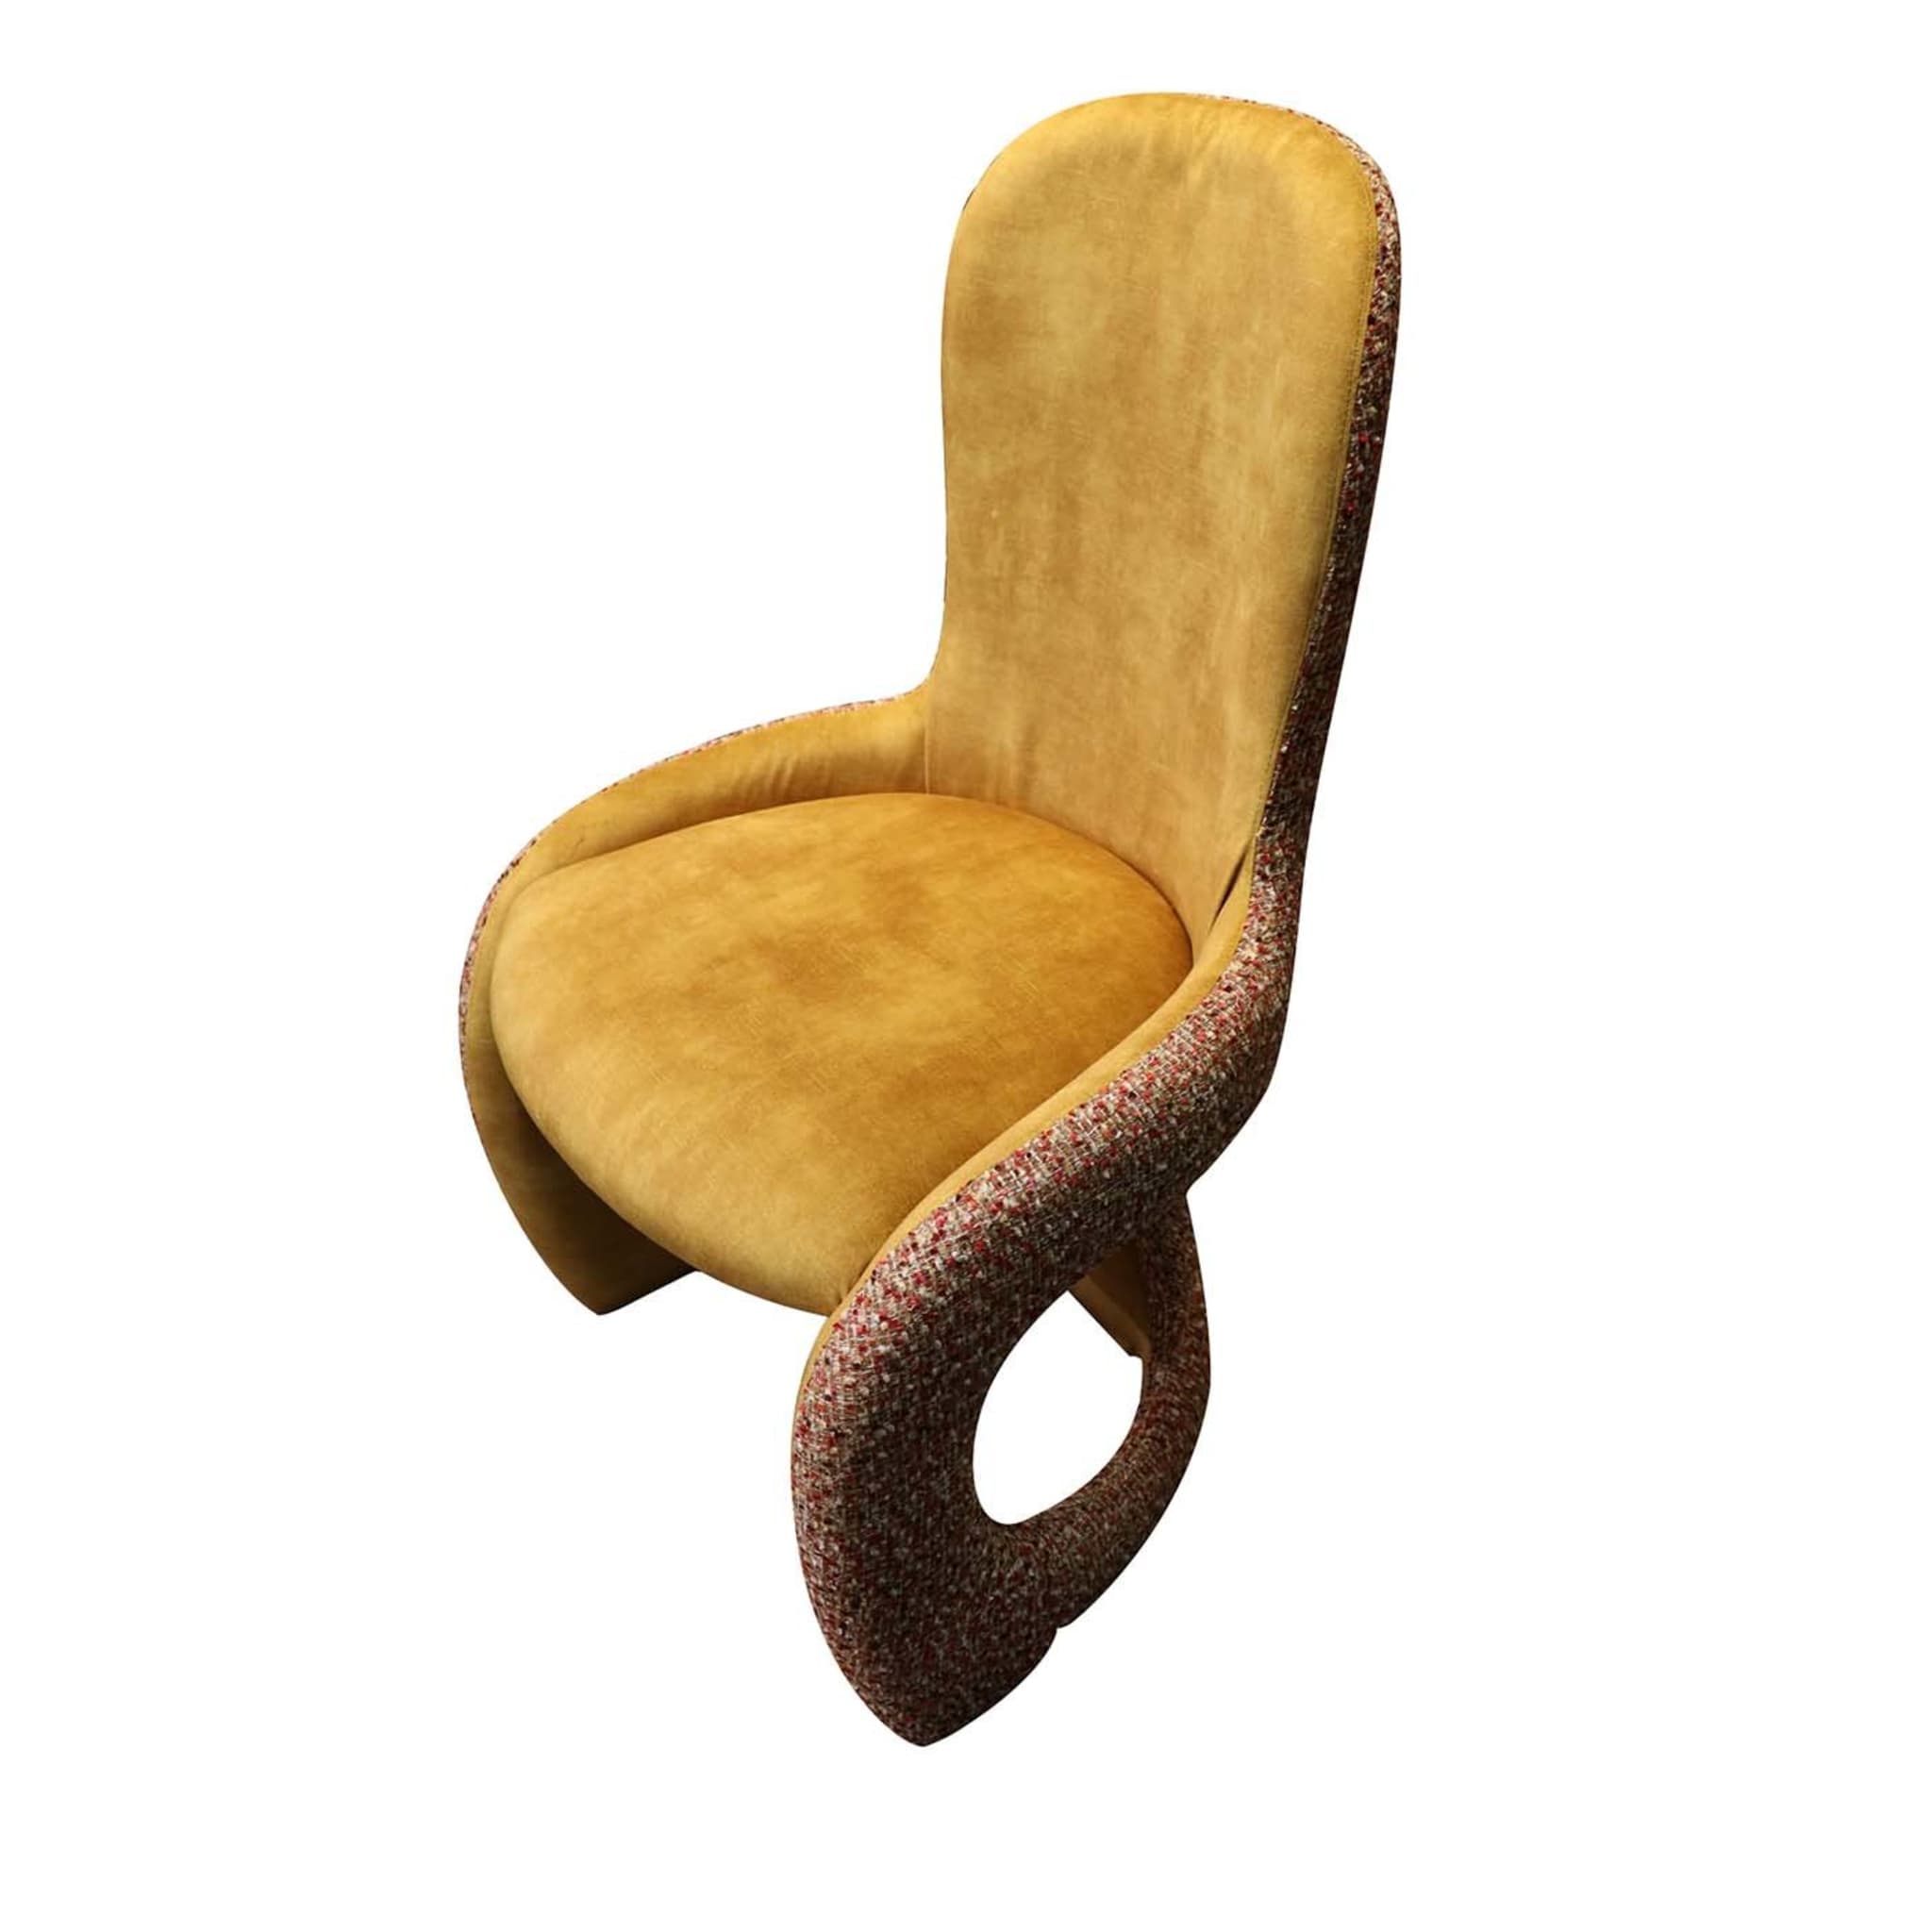 Venere Yellow Padded Chair - Main view